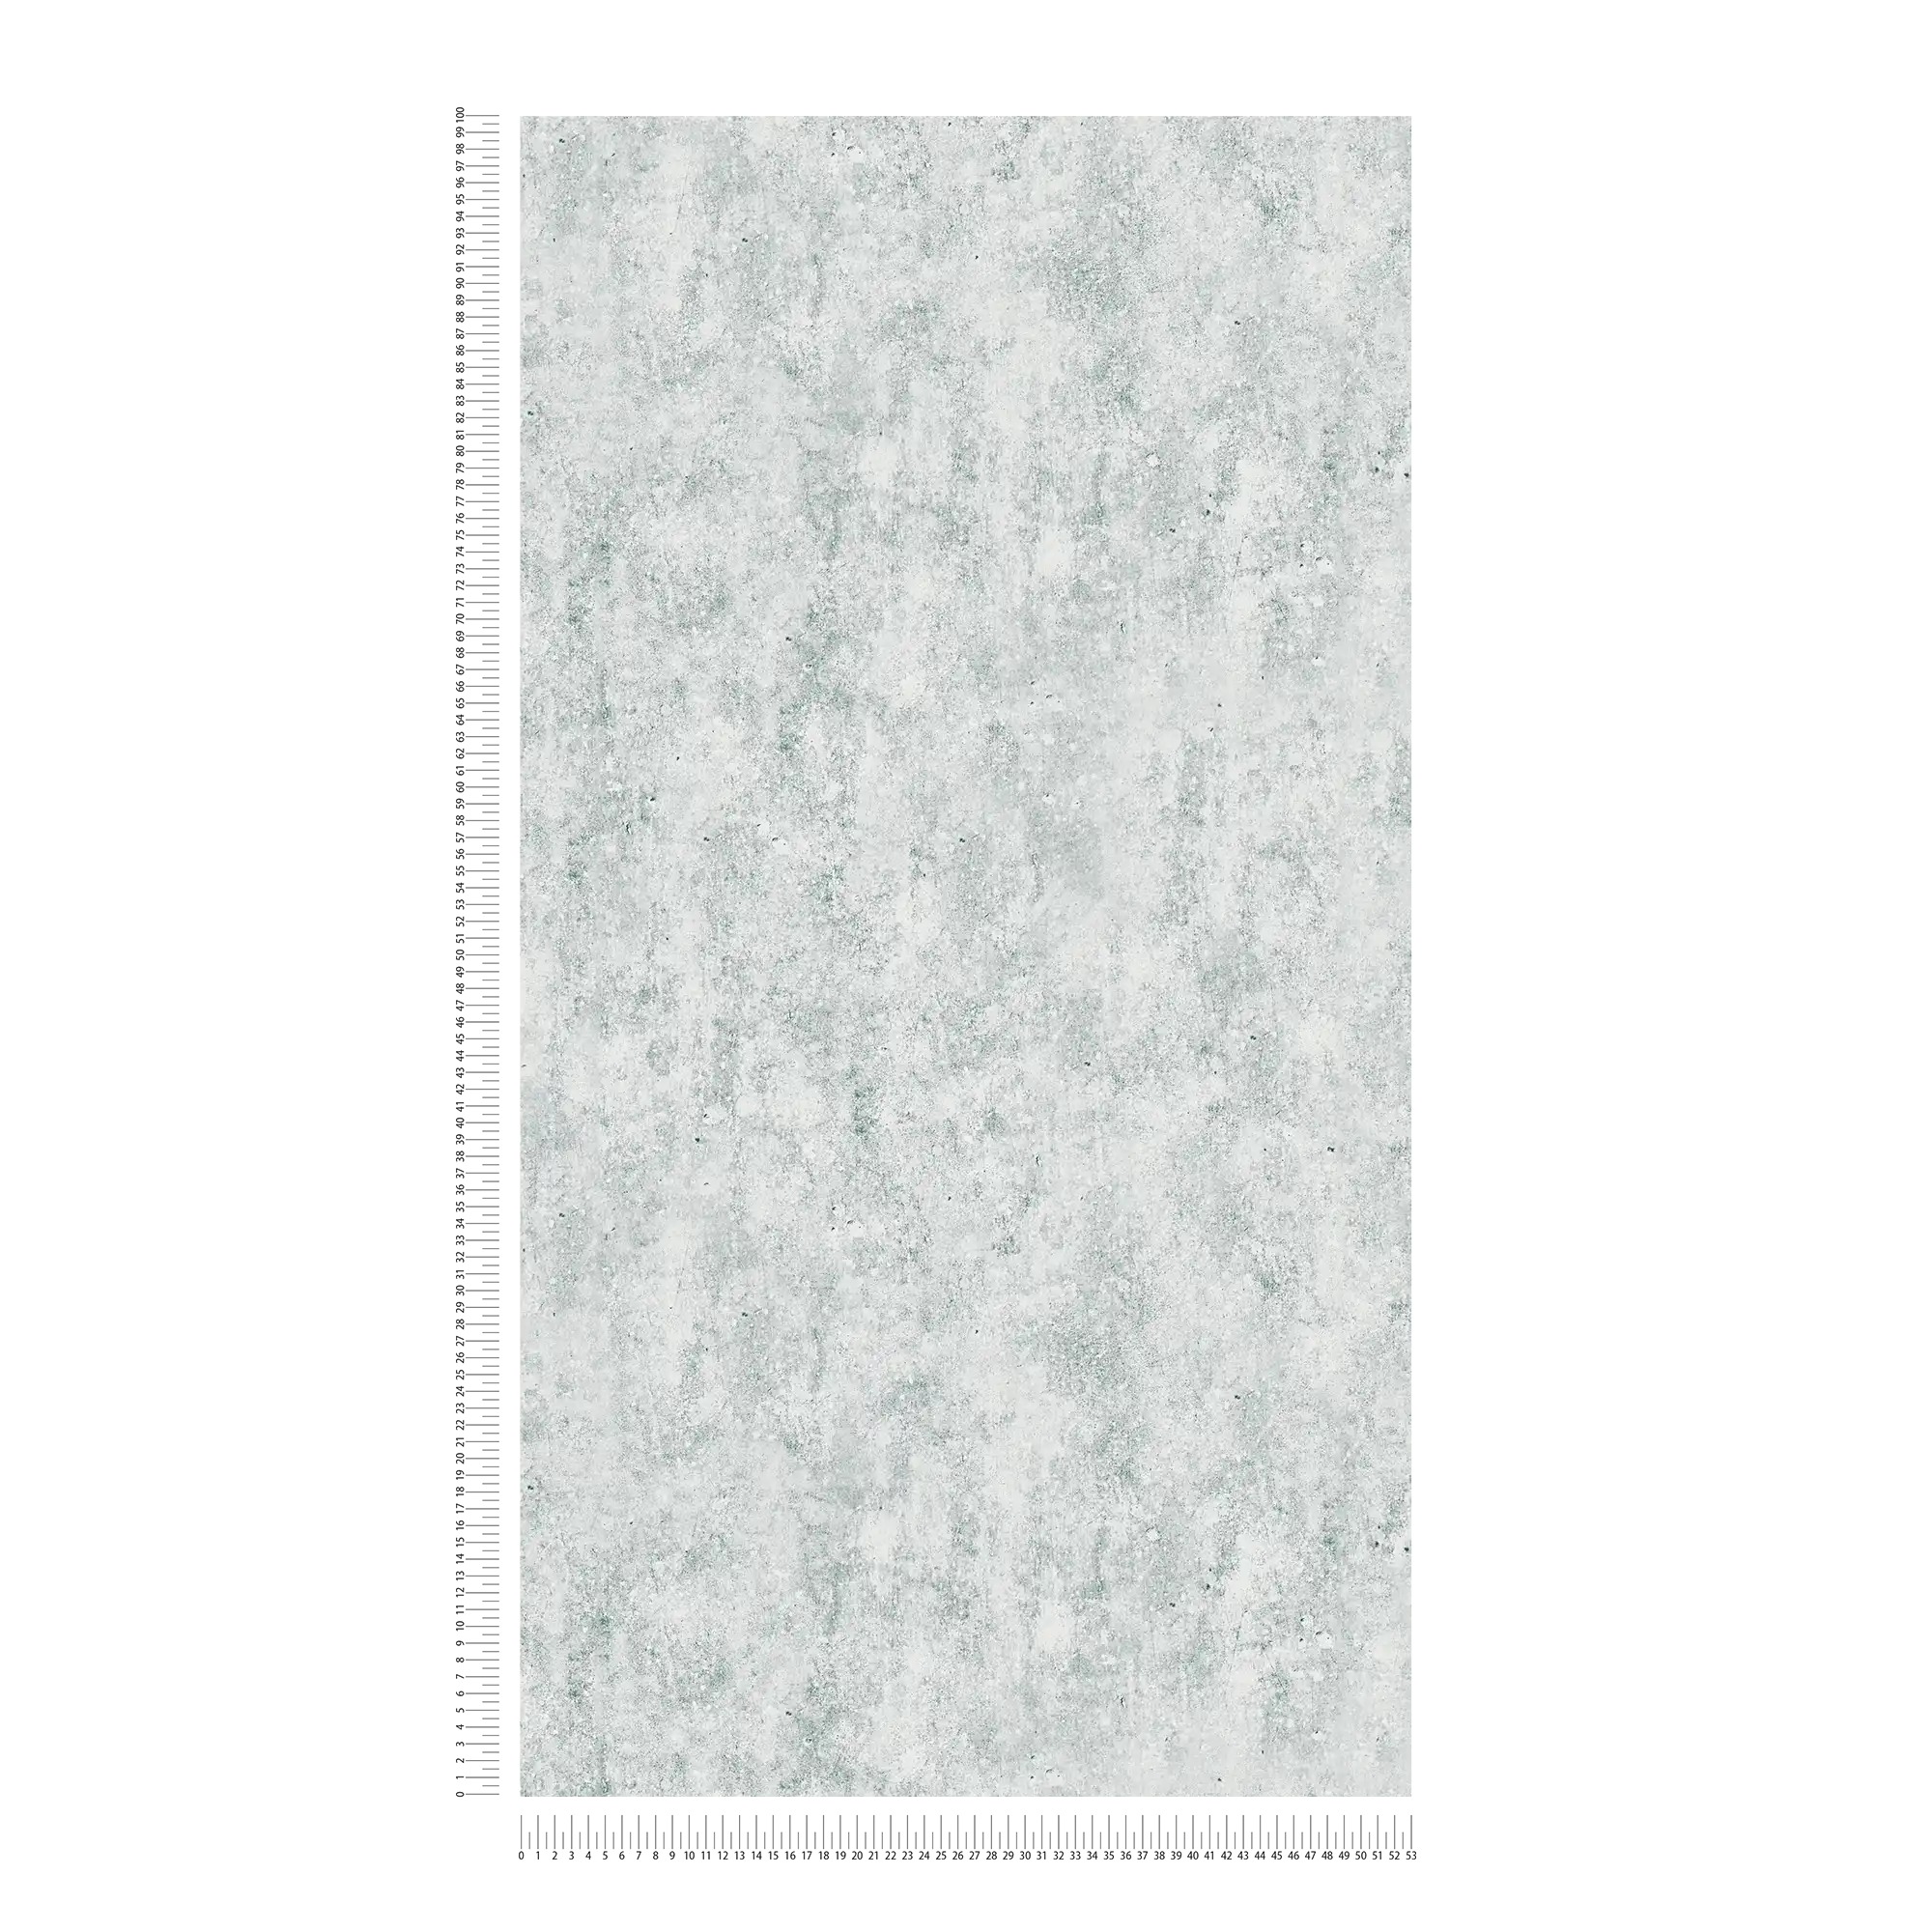             Carta da parati in cemento chiaro con aspetto superficiale ruvido - grigio
        